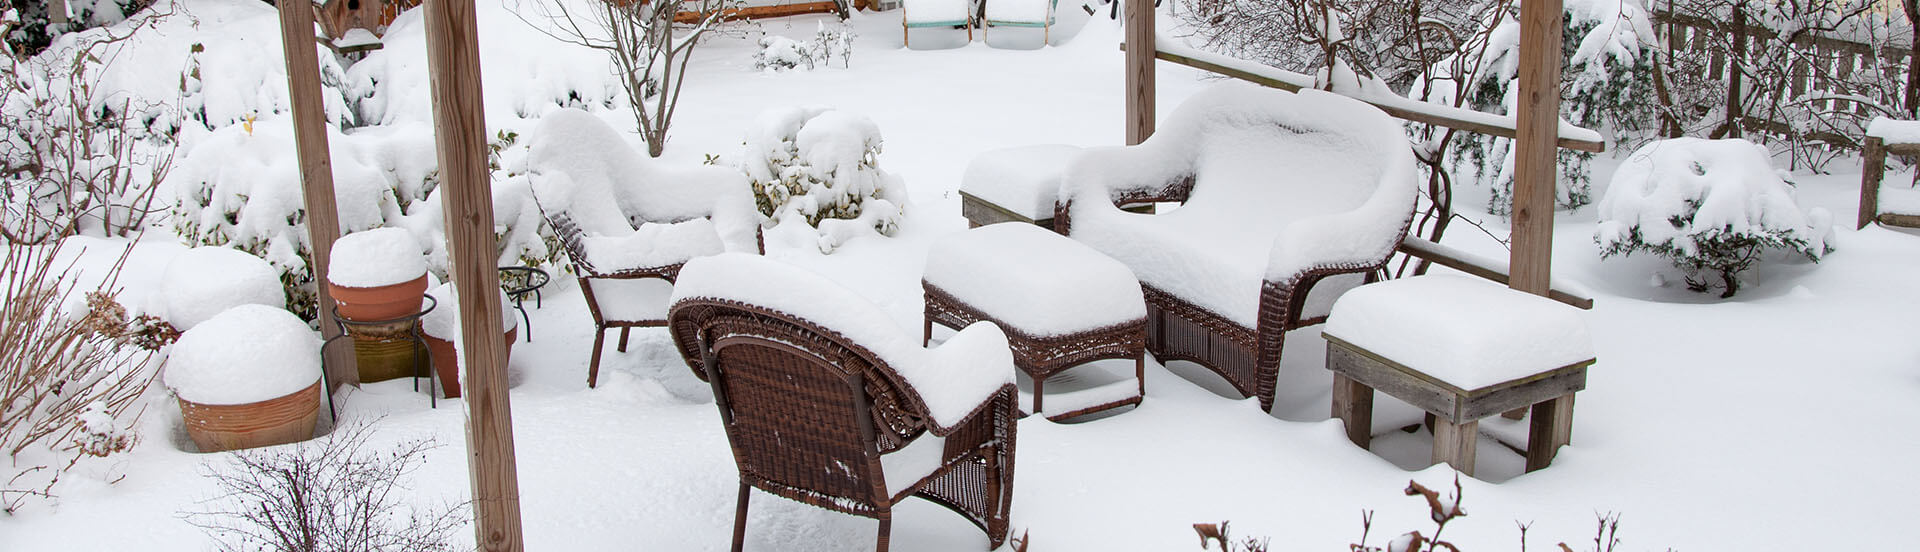 GUNST Blog - Pflegetipp Gartenmöbel: Eine zugeschneite Terrasse mit Gartenmöbeln.